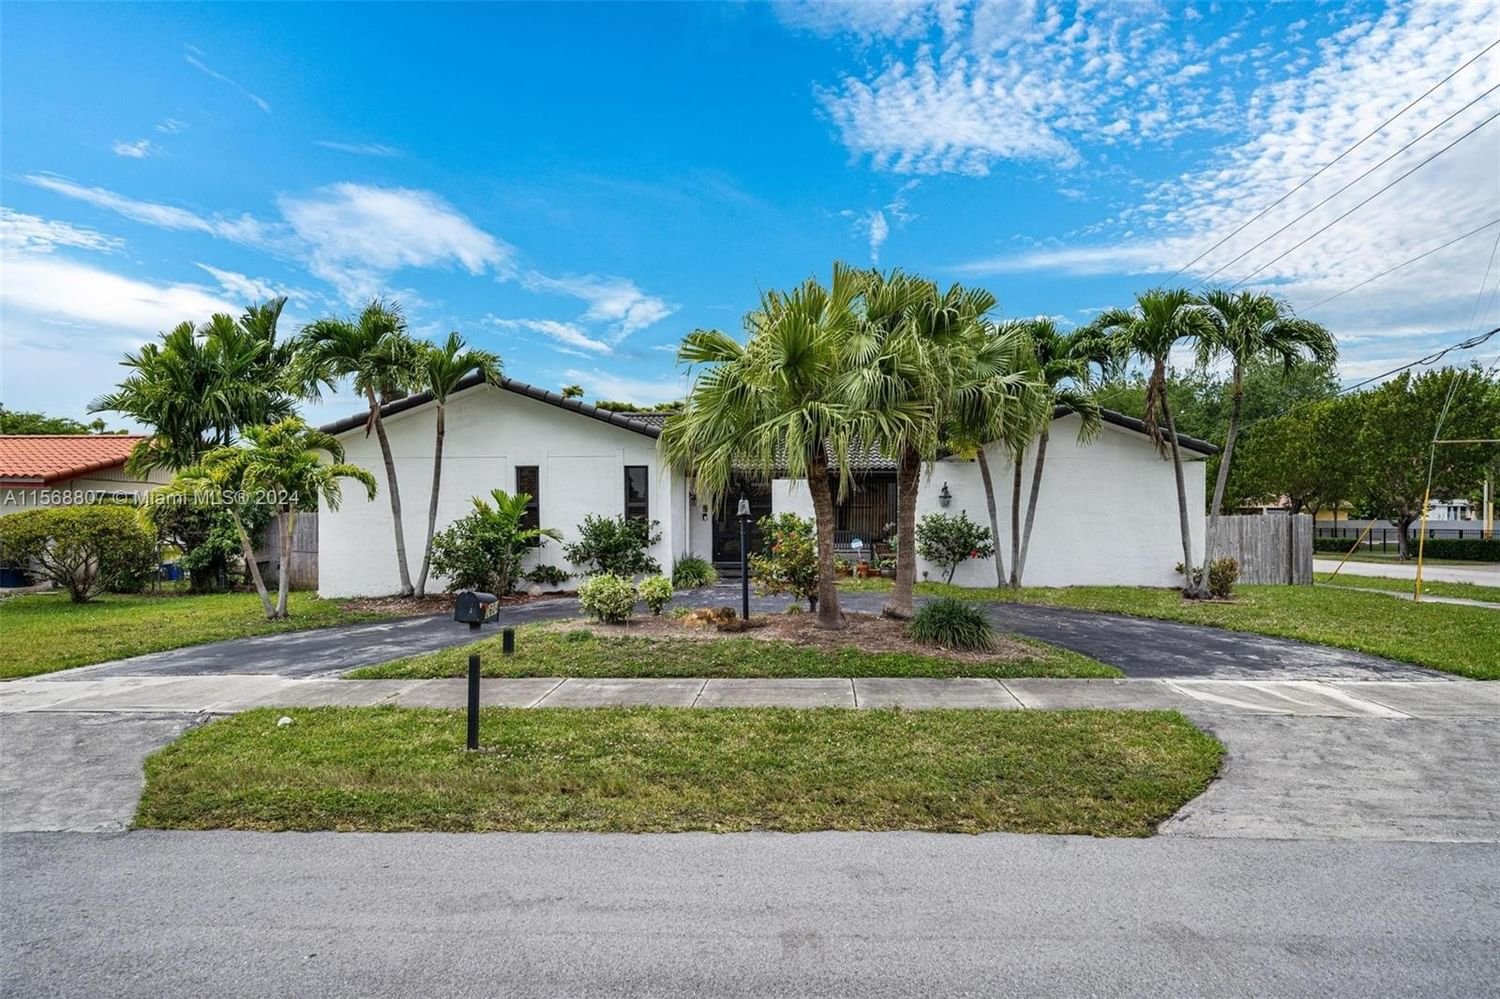 Real estate property located at 2604 108th Ct, Miami-Dade County, CUBARANDA ESTATES, Miami, FL